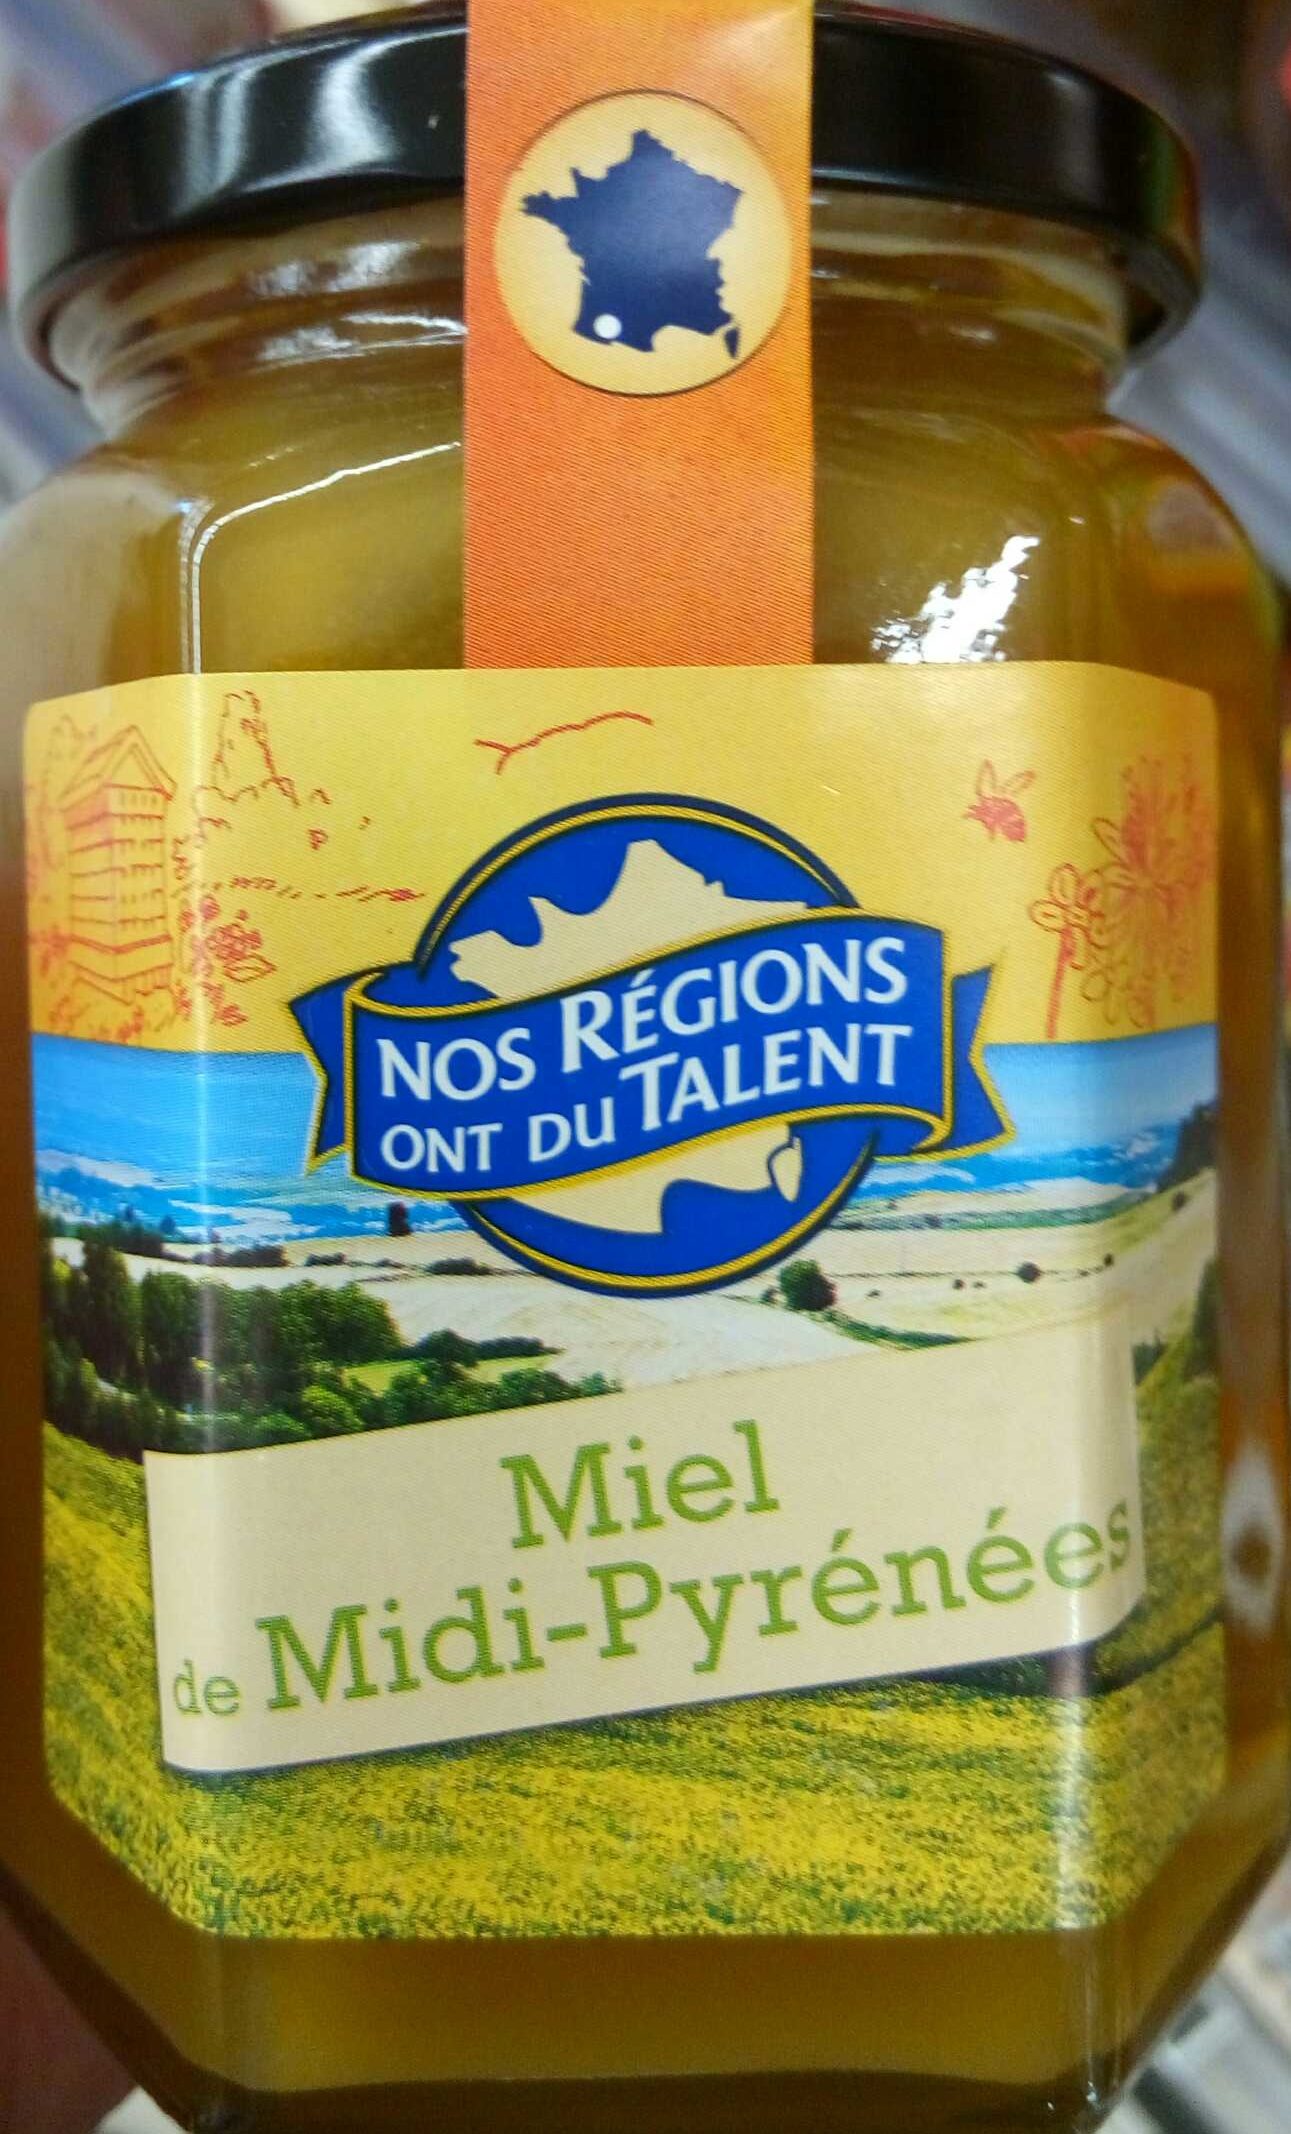 Miel de Midi-Pyrénées - Product - fr